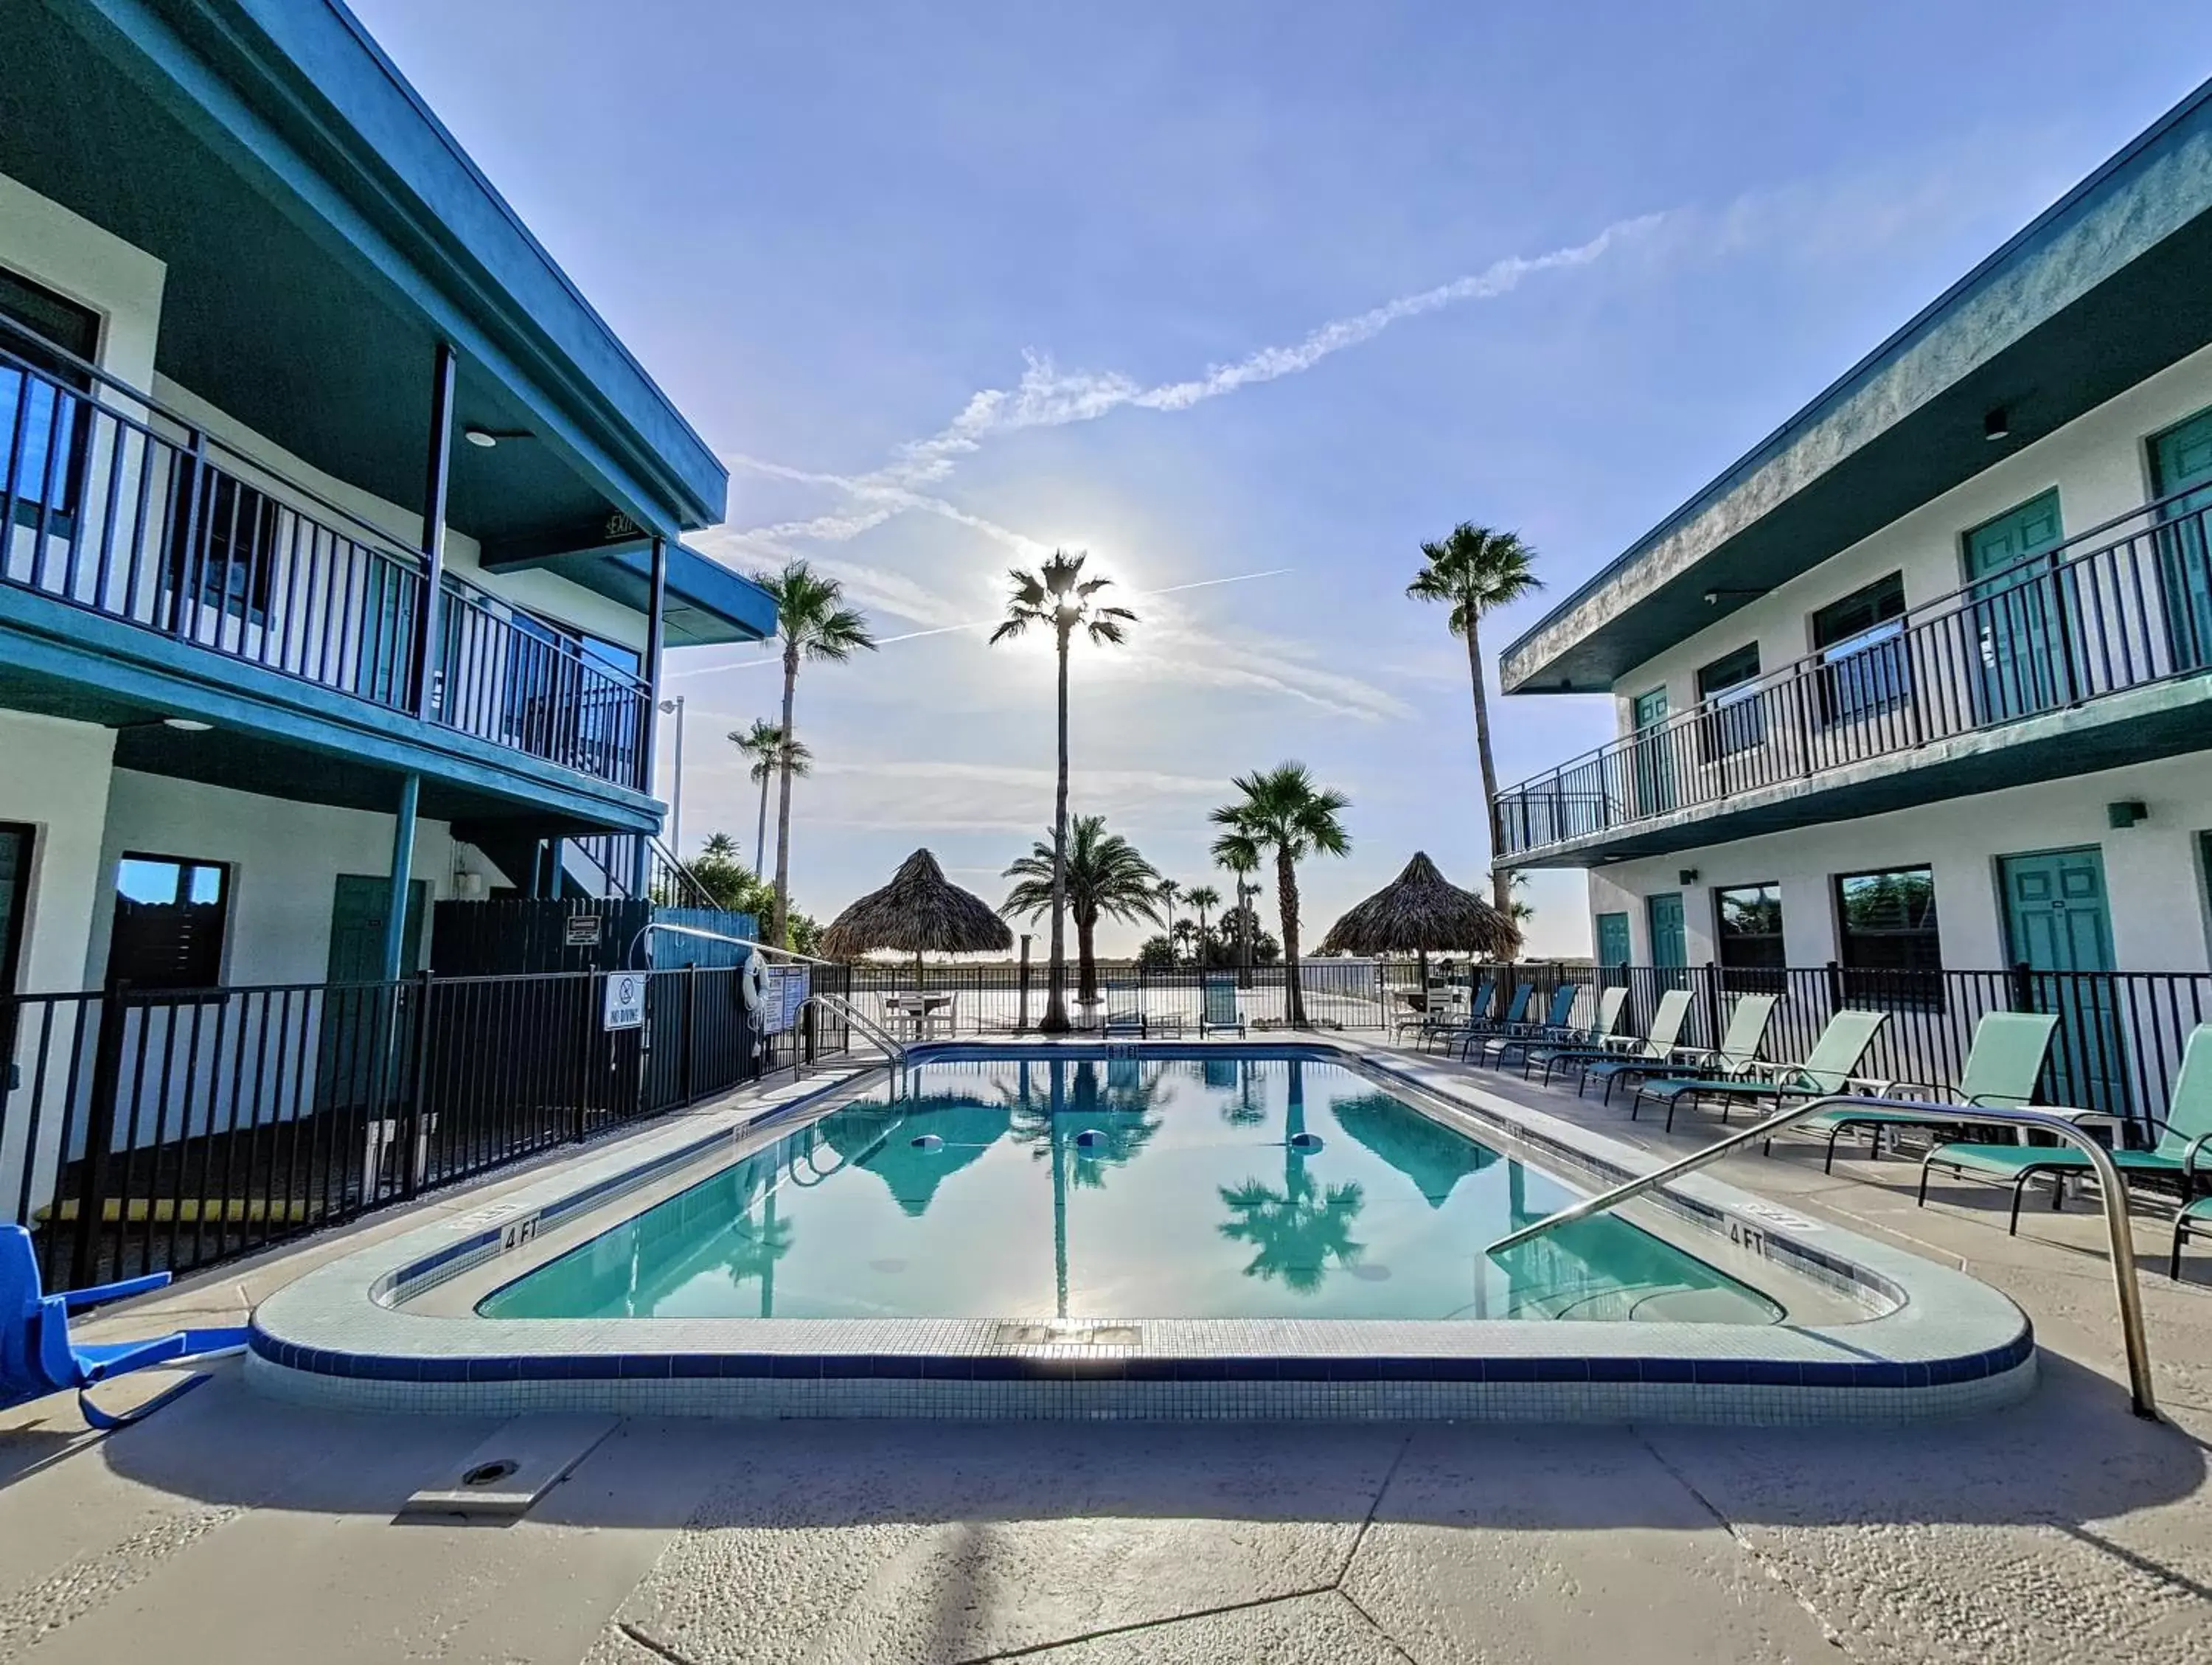 Pool view, Property Building in Tahitian Beach Resort